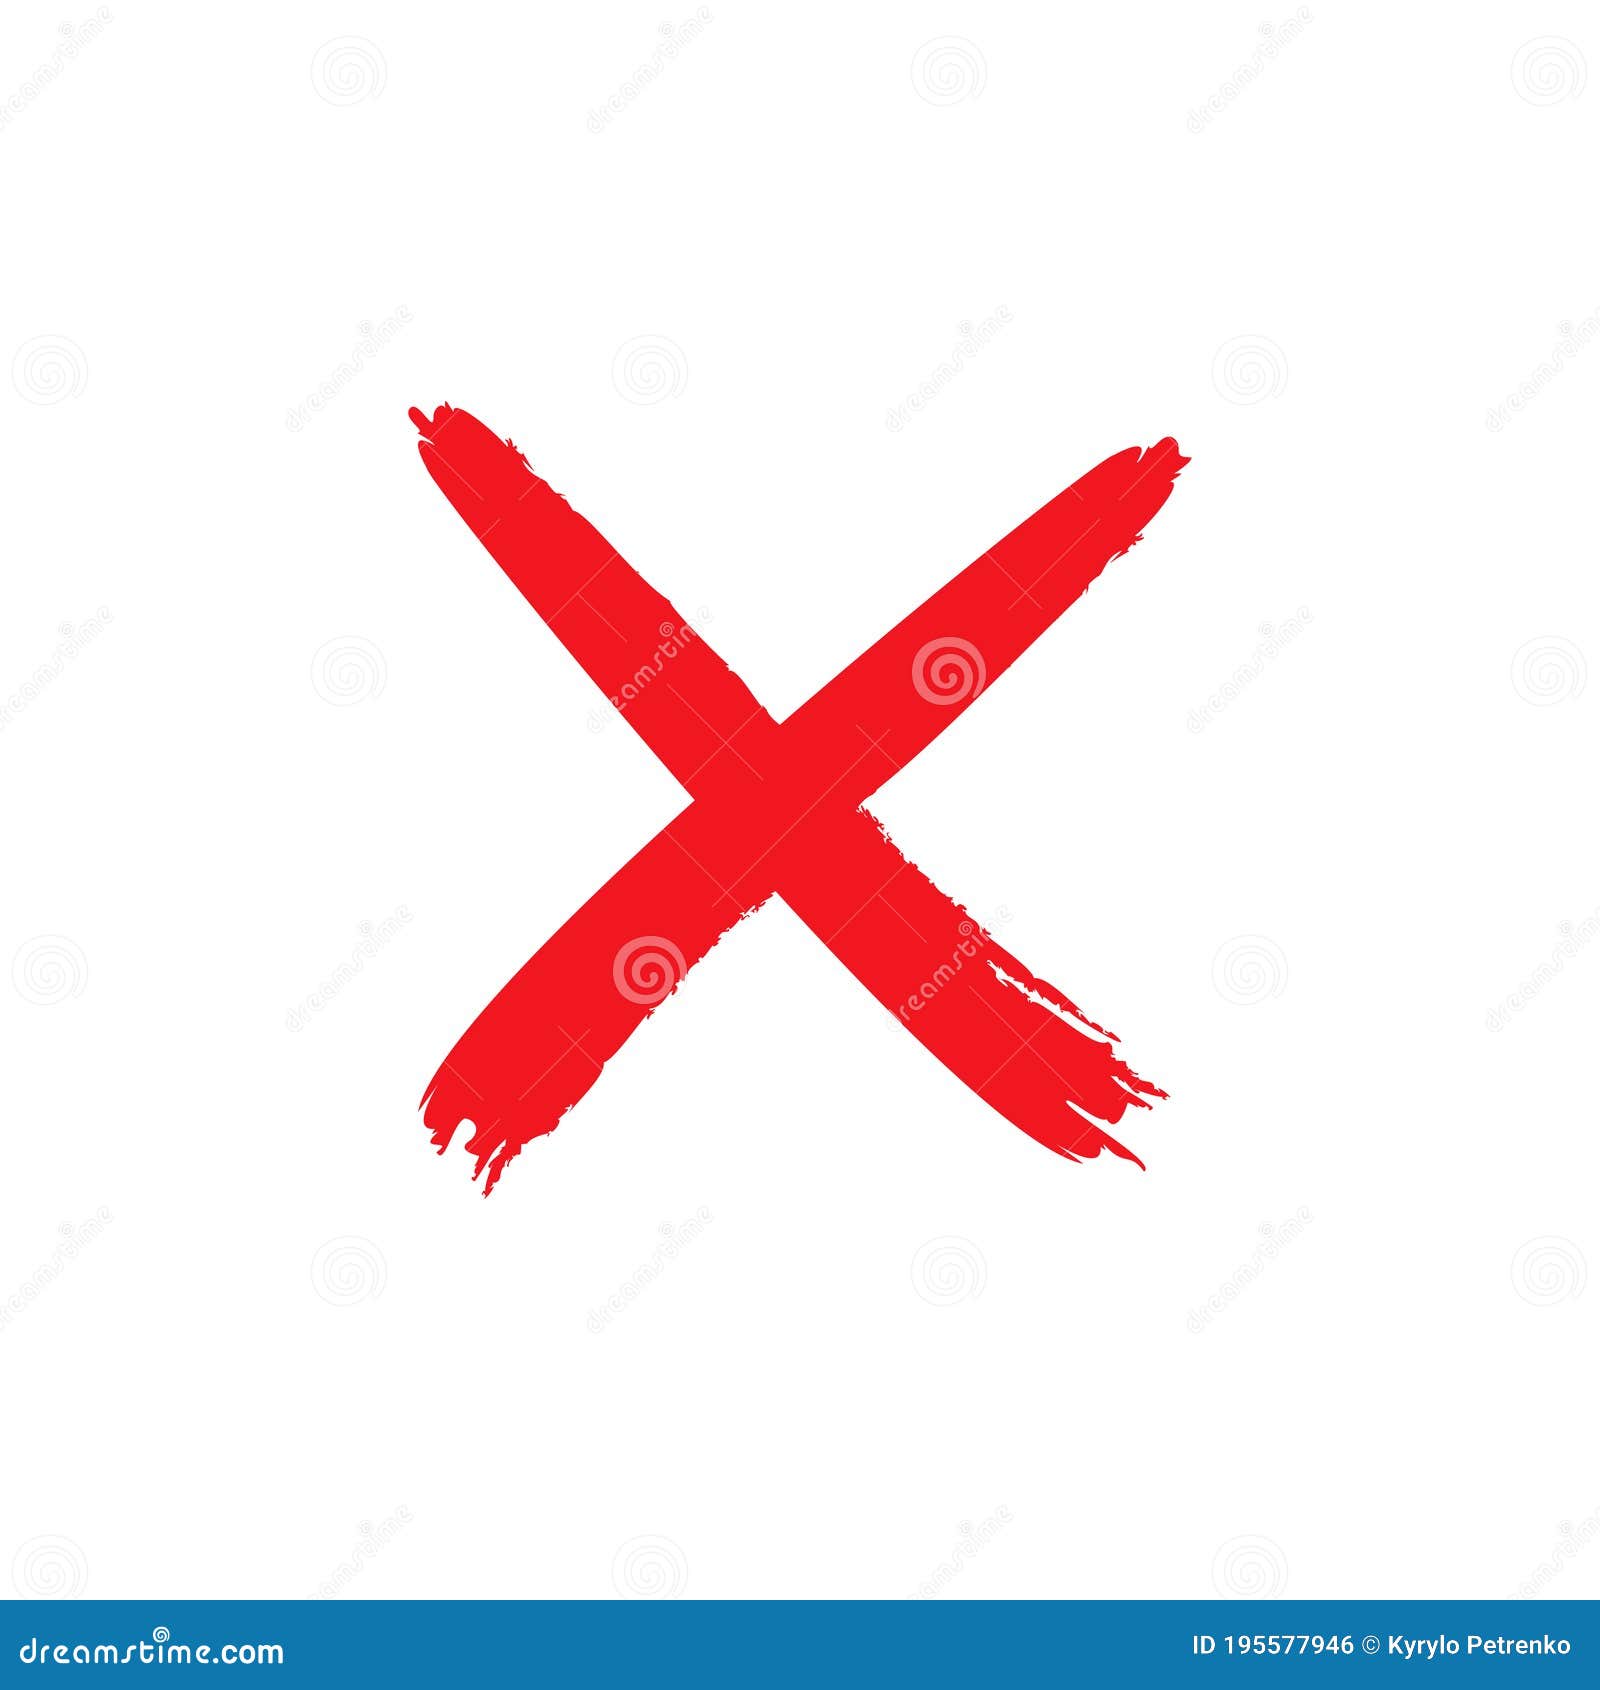 Biểu tượng X vector của Đỏ Lửa (Red Cross) có nền đỏ trắng thể hiện tính chuyên nghiệp, tinh tế và mạnh mẽ về thương hiệu Đỏ Lửa. Hình ảnh được thiết kế với độ chính xác cao và màu sắc đặc trưng, tạo nên một hình ảnh đẹp mắt và thu hút sự chú ý của người xem.